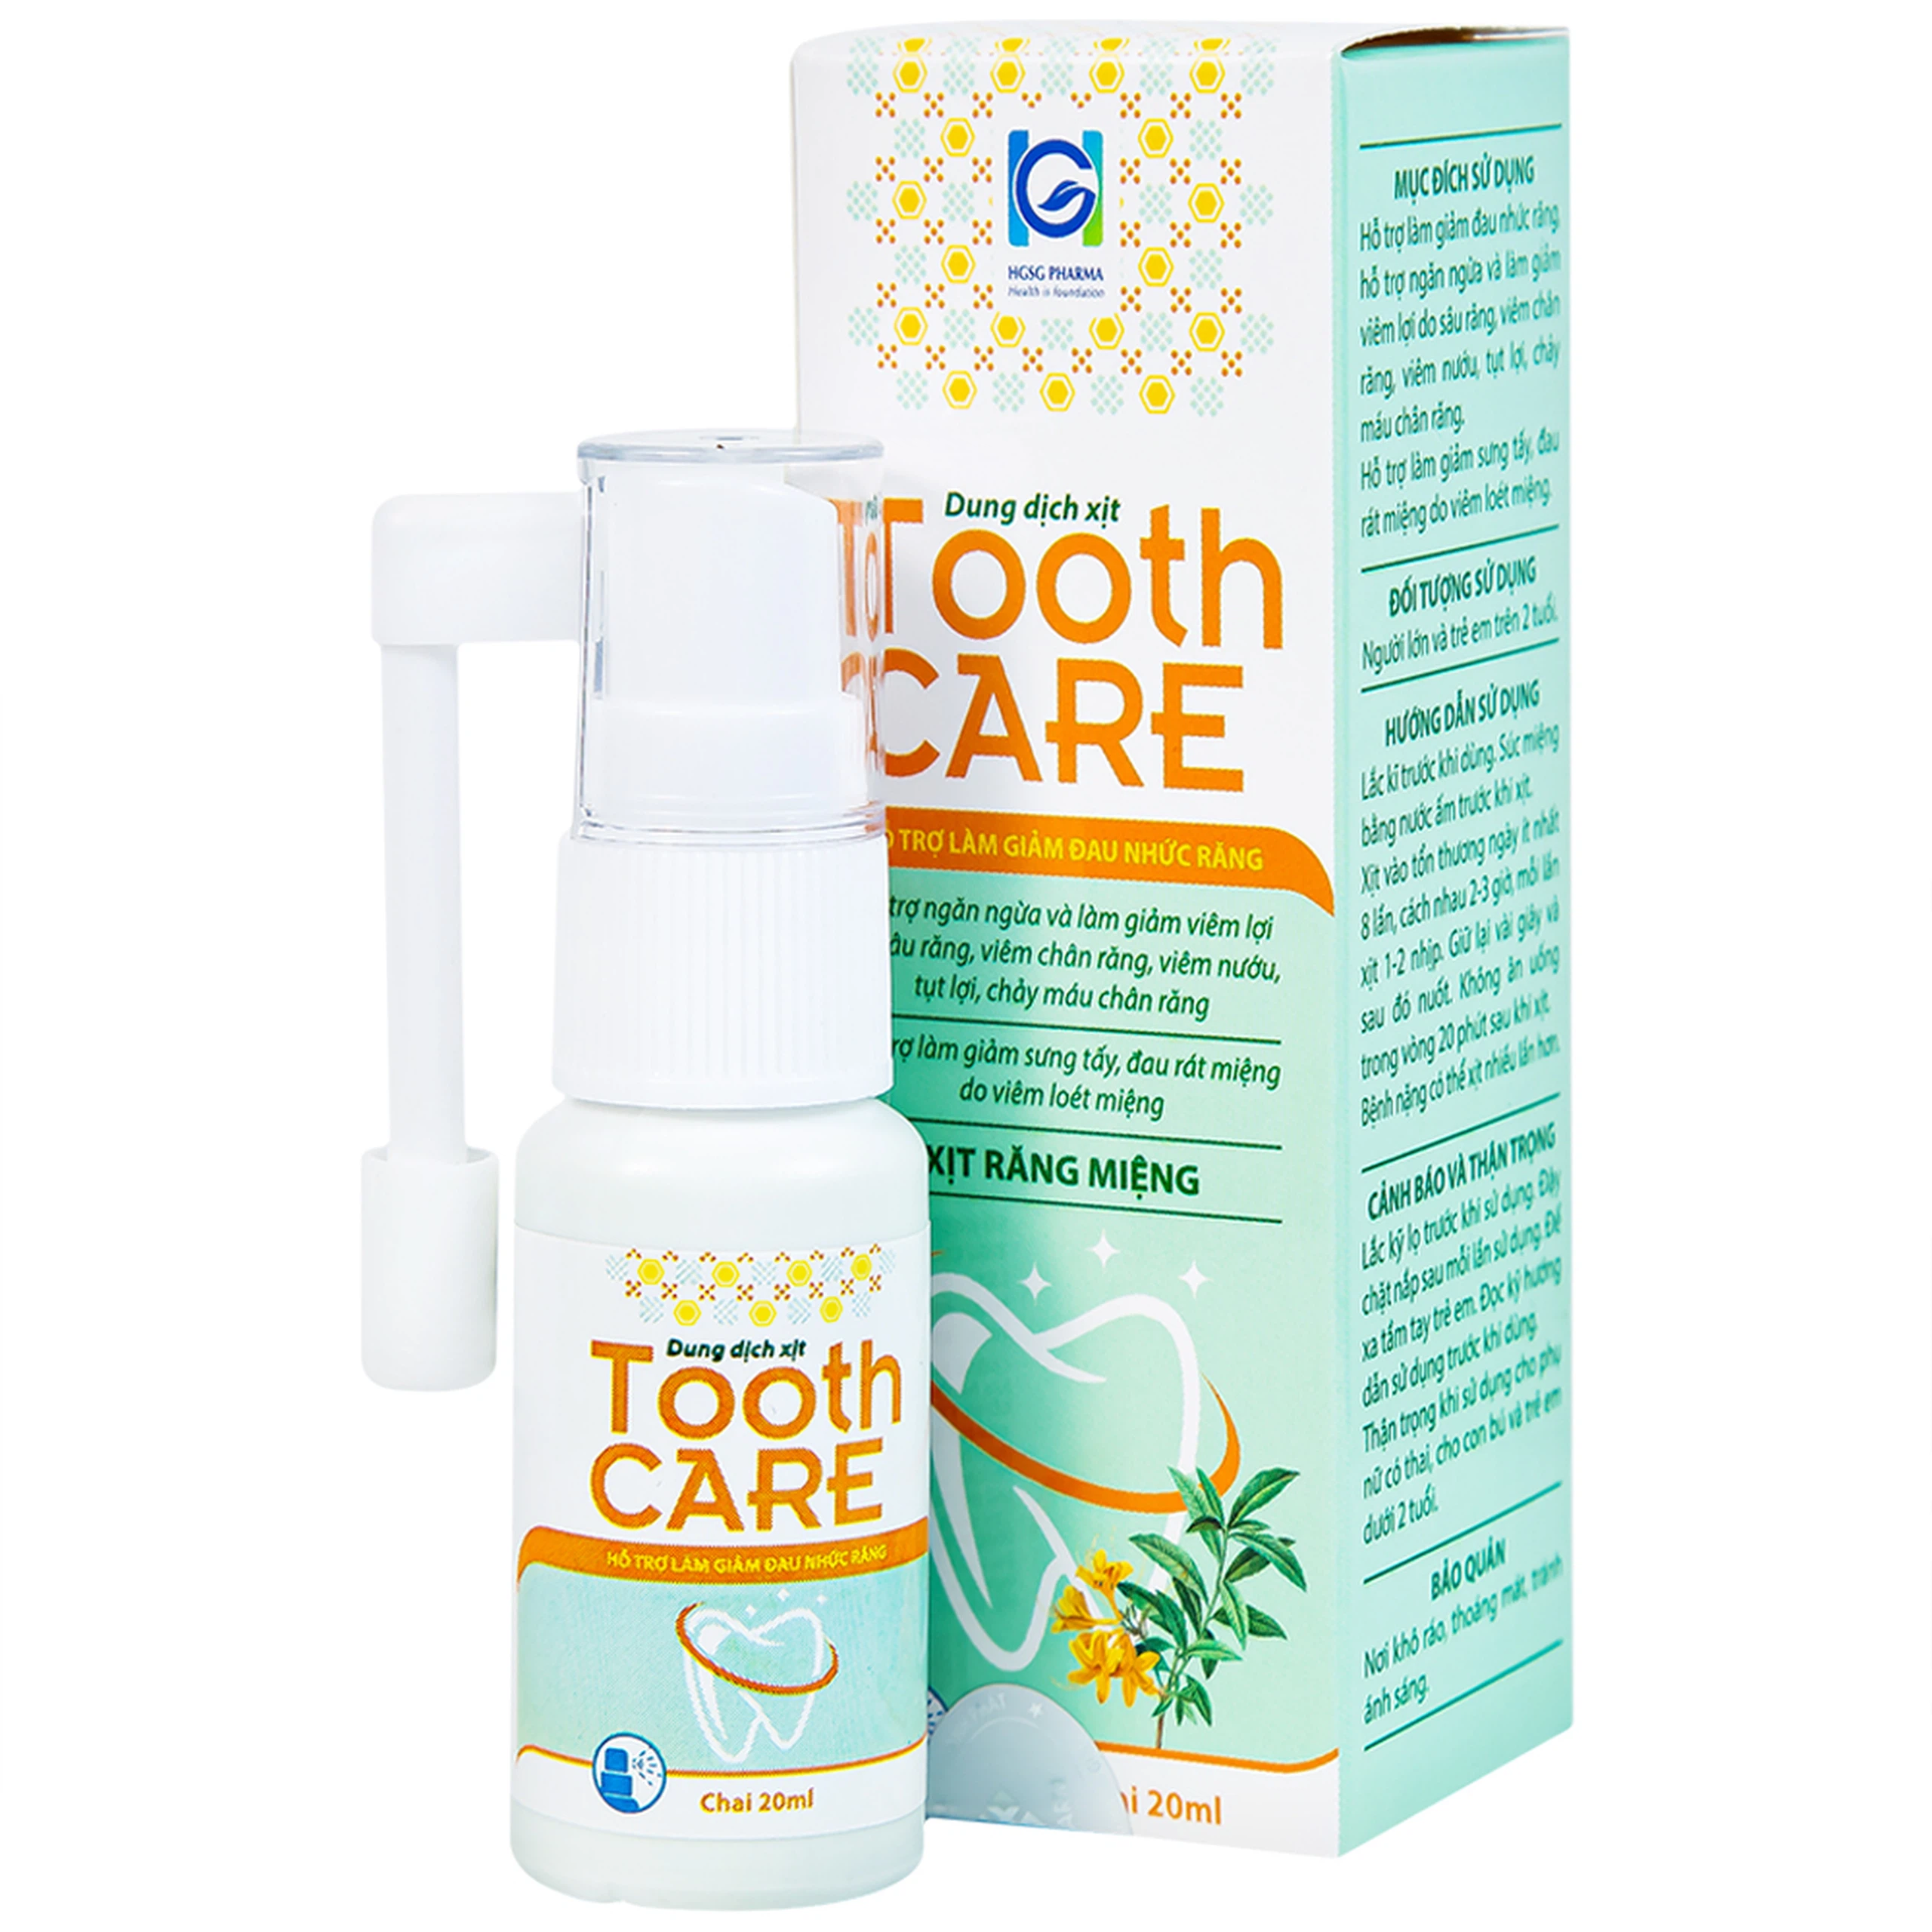 Dung dịch xịt Tooth Care hỗ trợ giảm đau nhức răng (20ml)